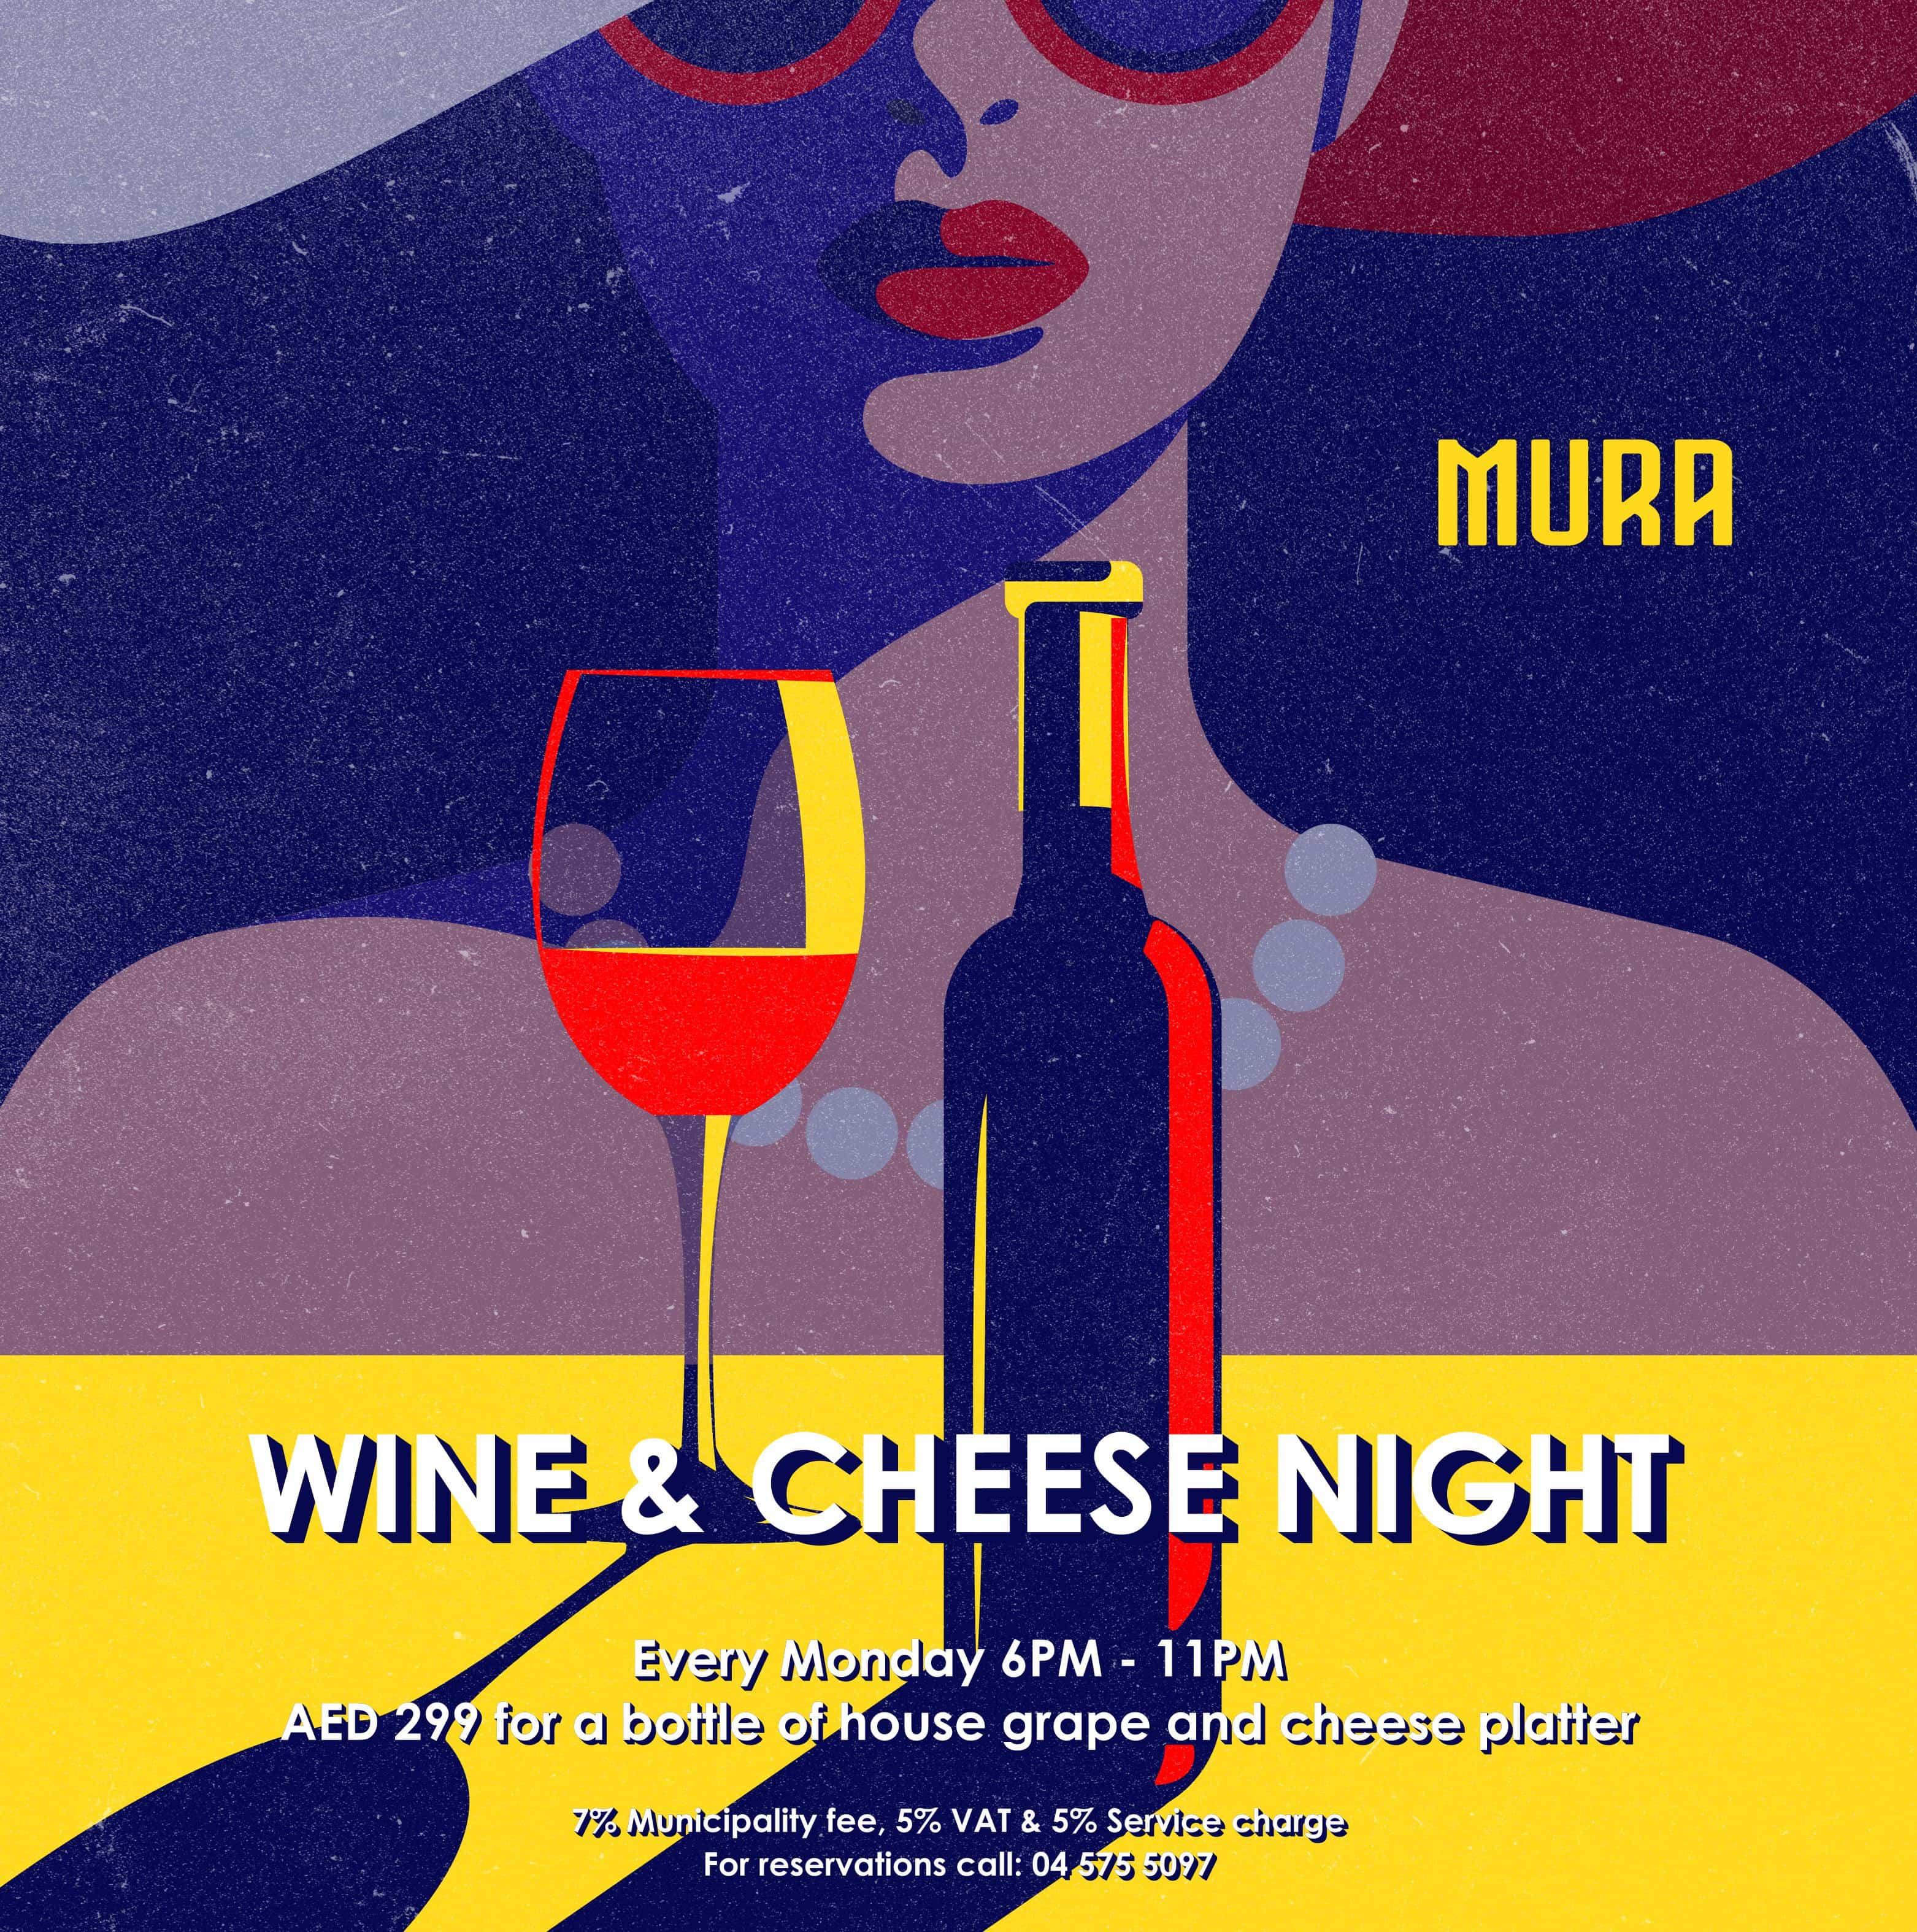 Wine and cheese at Mura